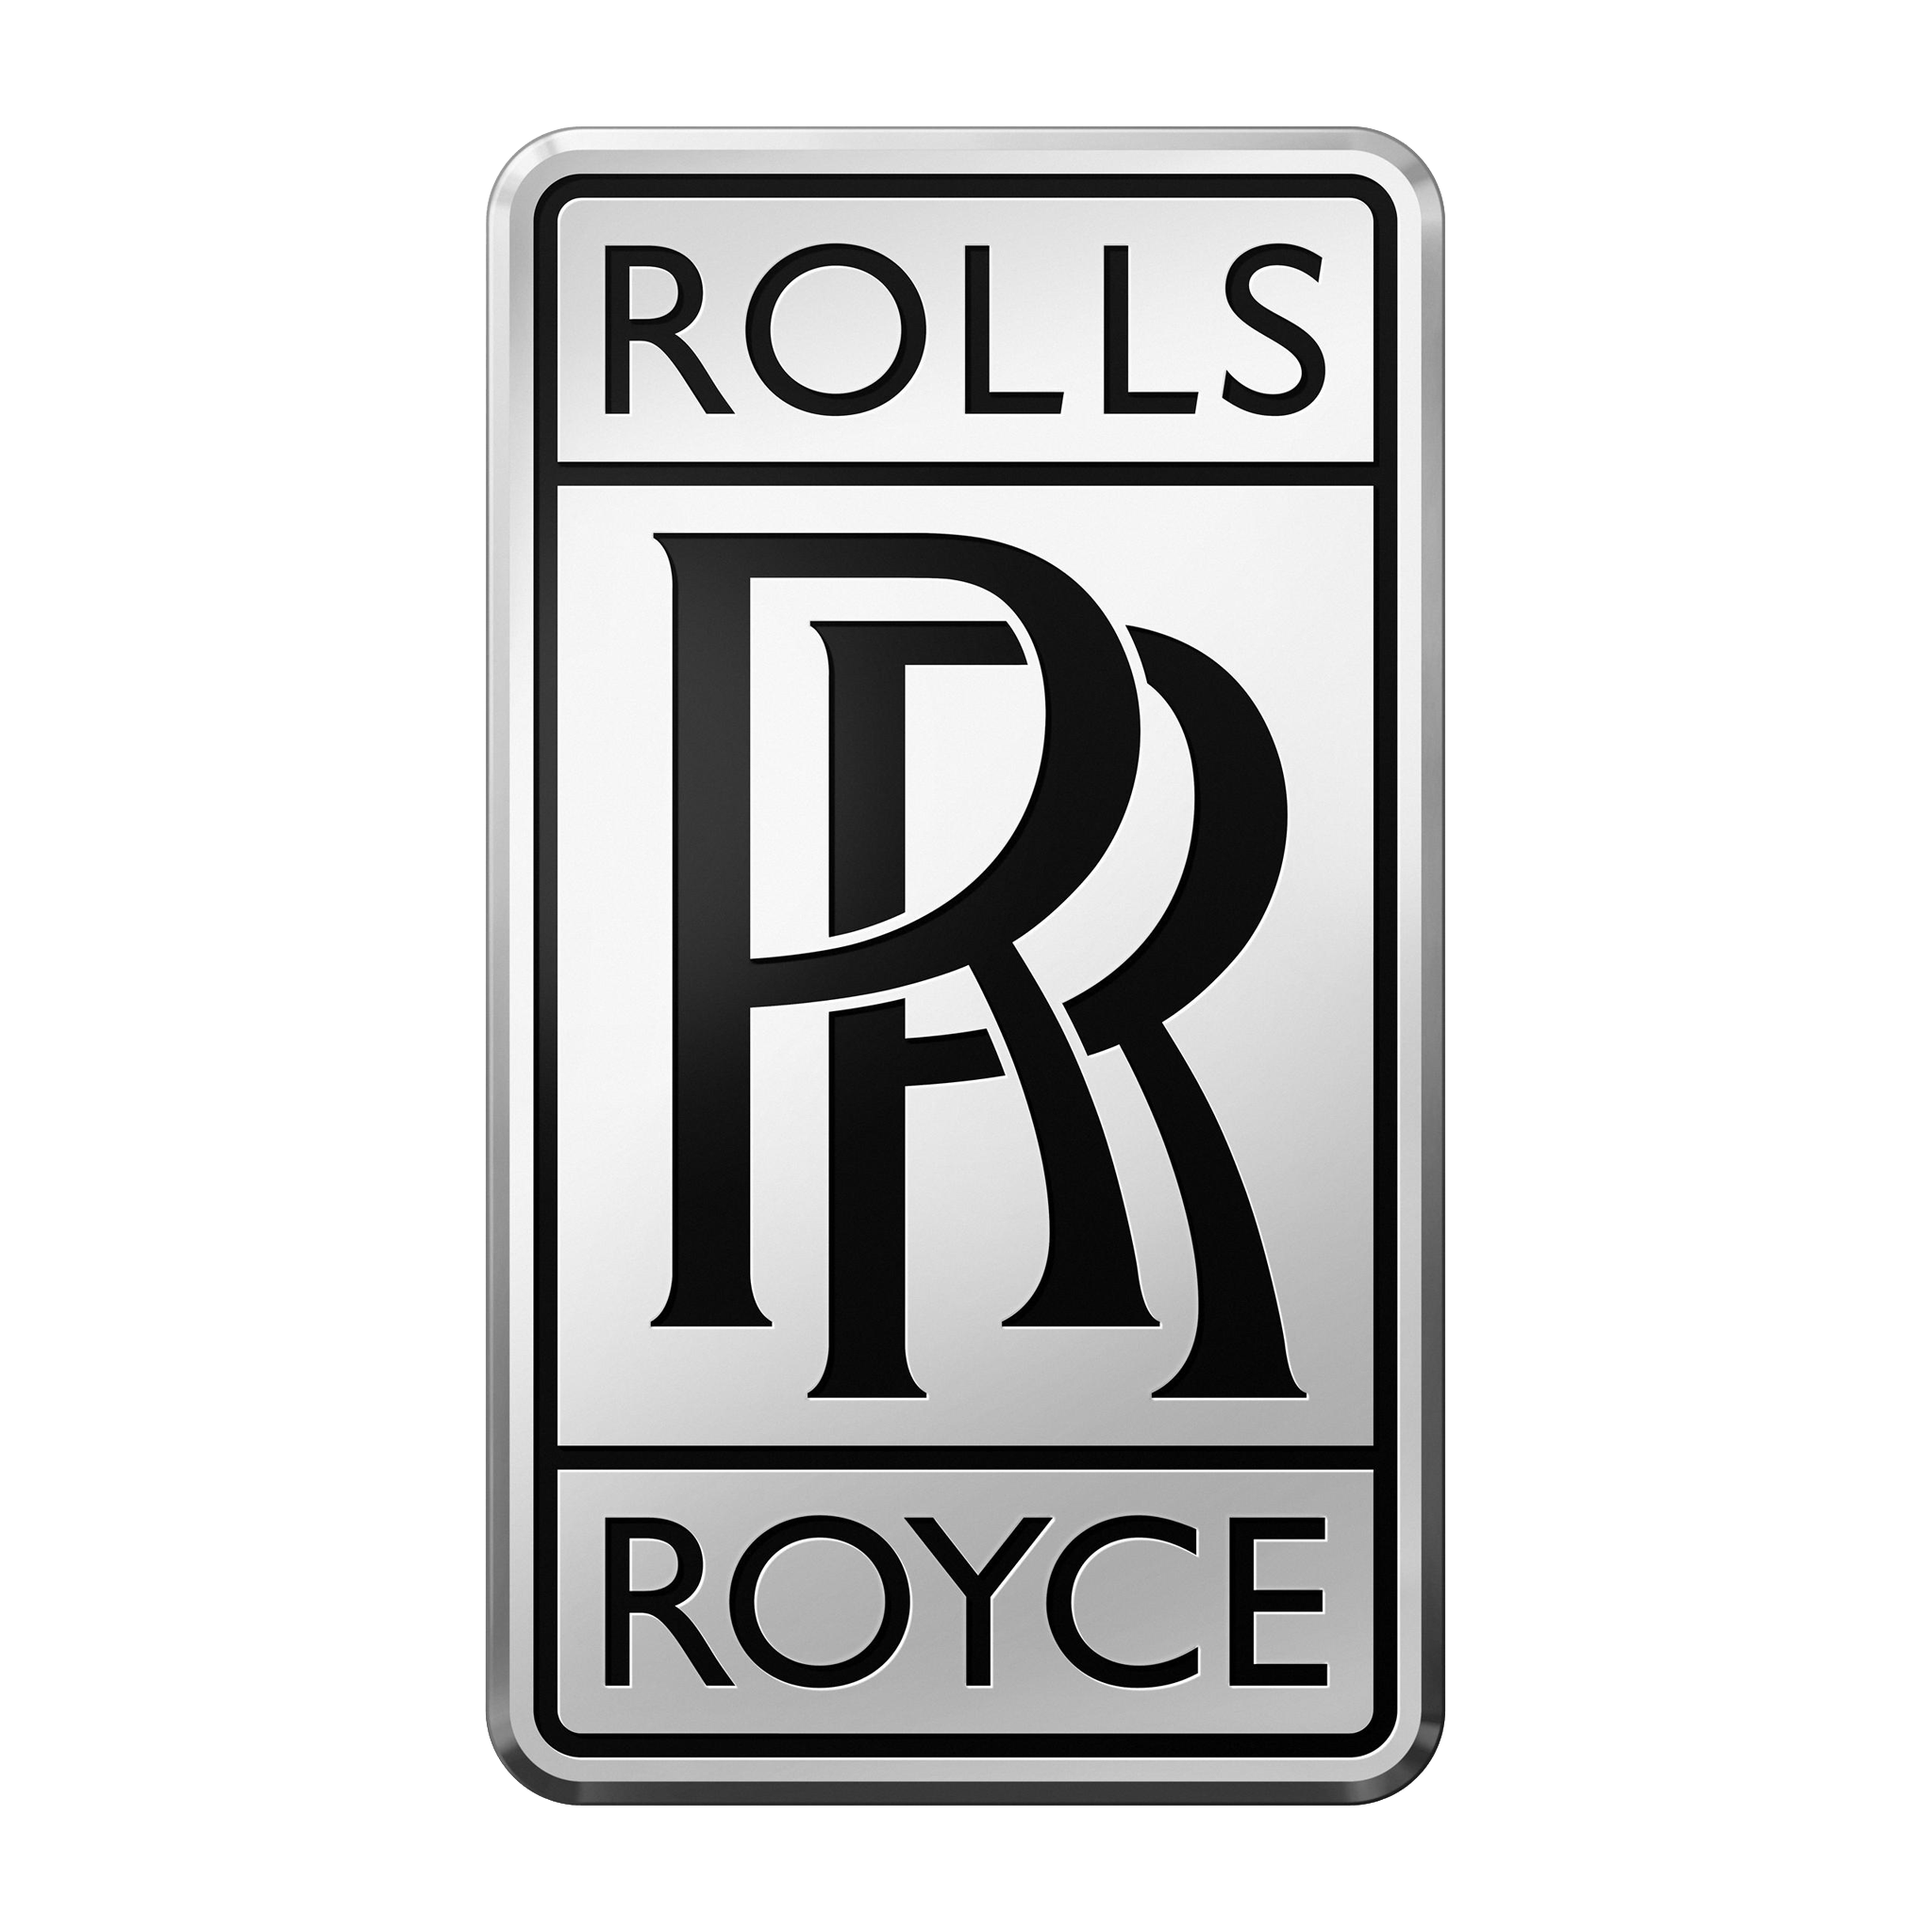 Tổng hợp 86+ về rolls royce r logo mới nhất